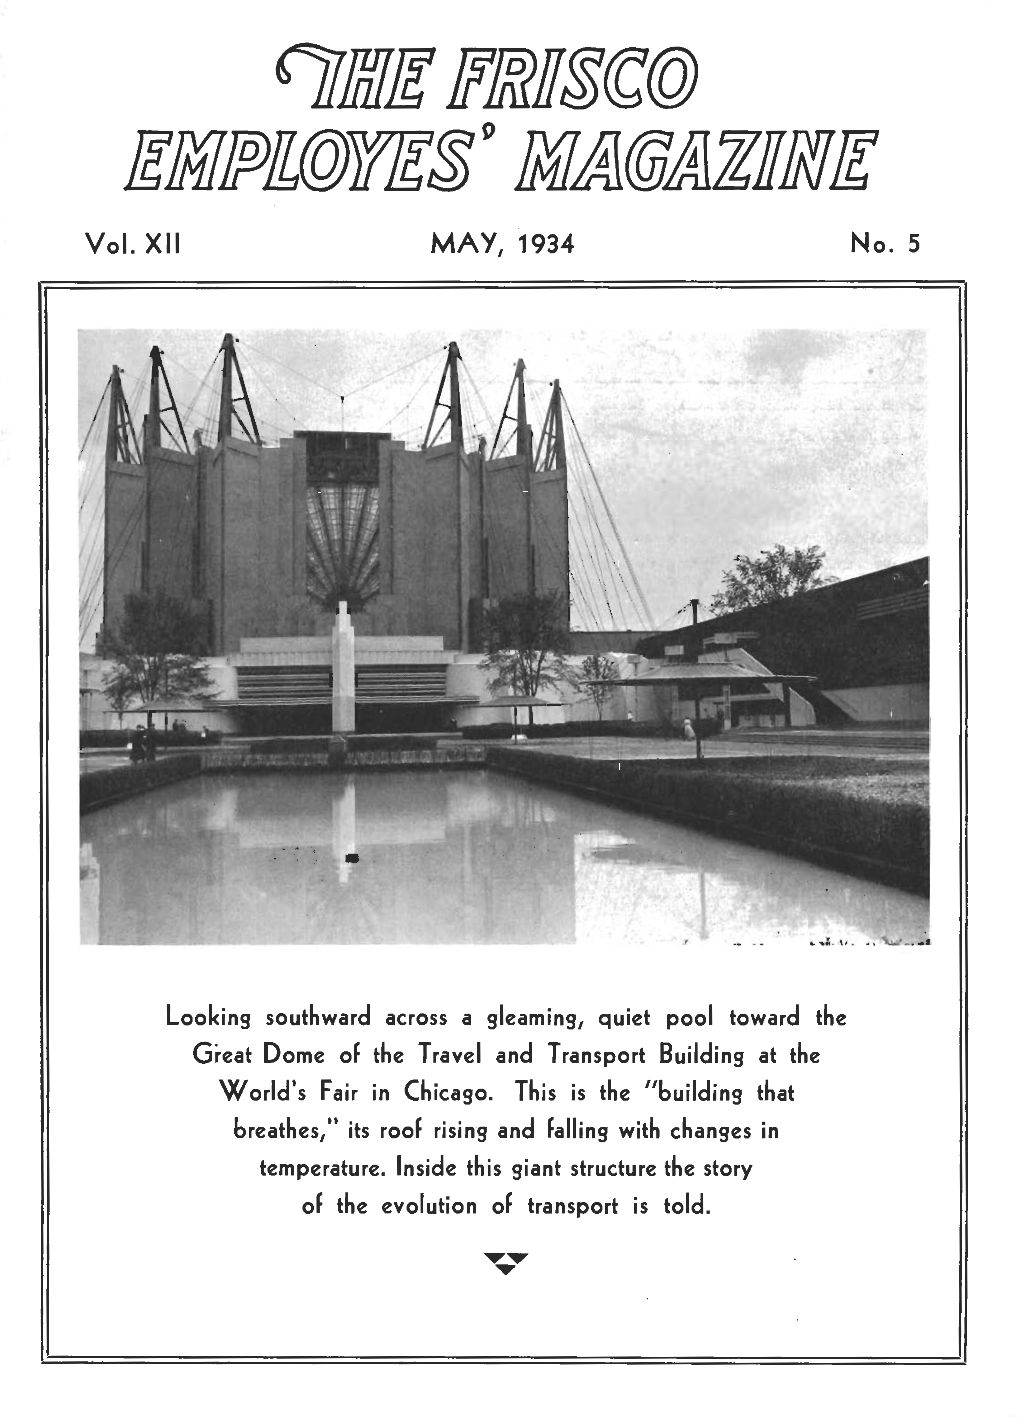 The Frisco Employes' Magazine, May 1934